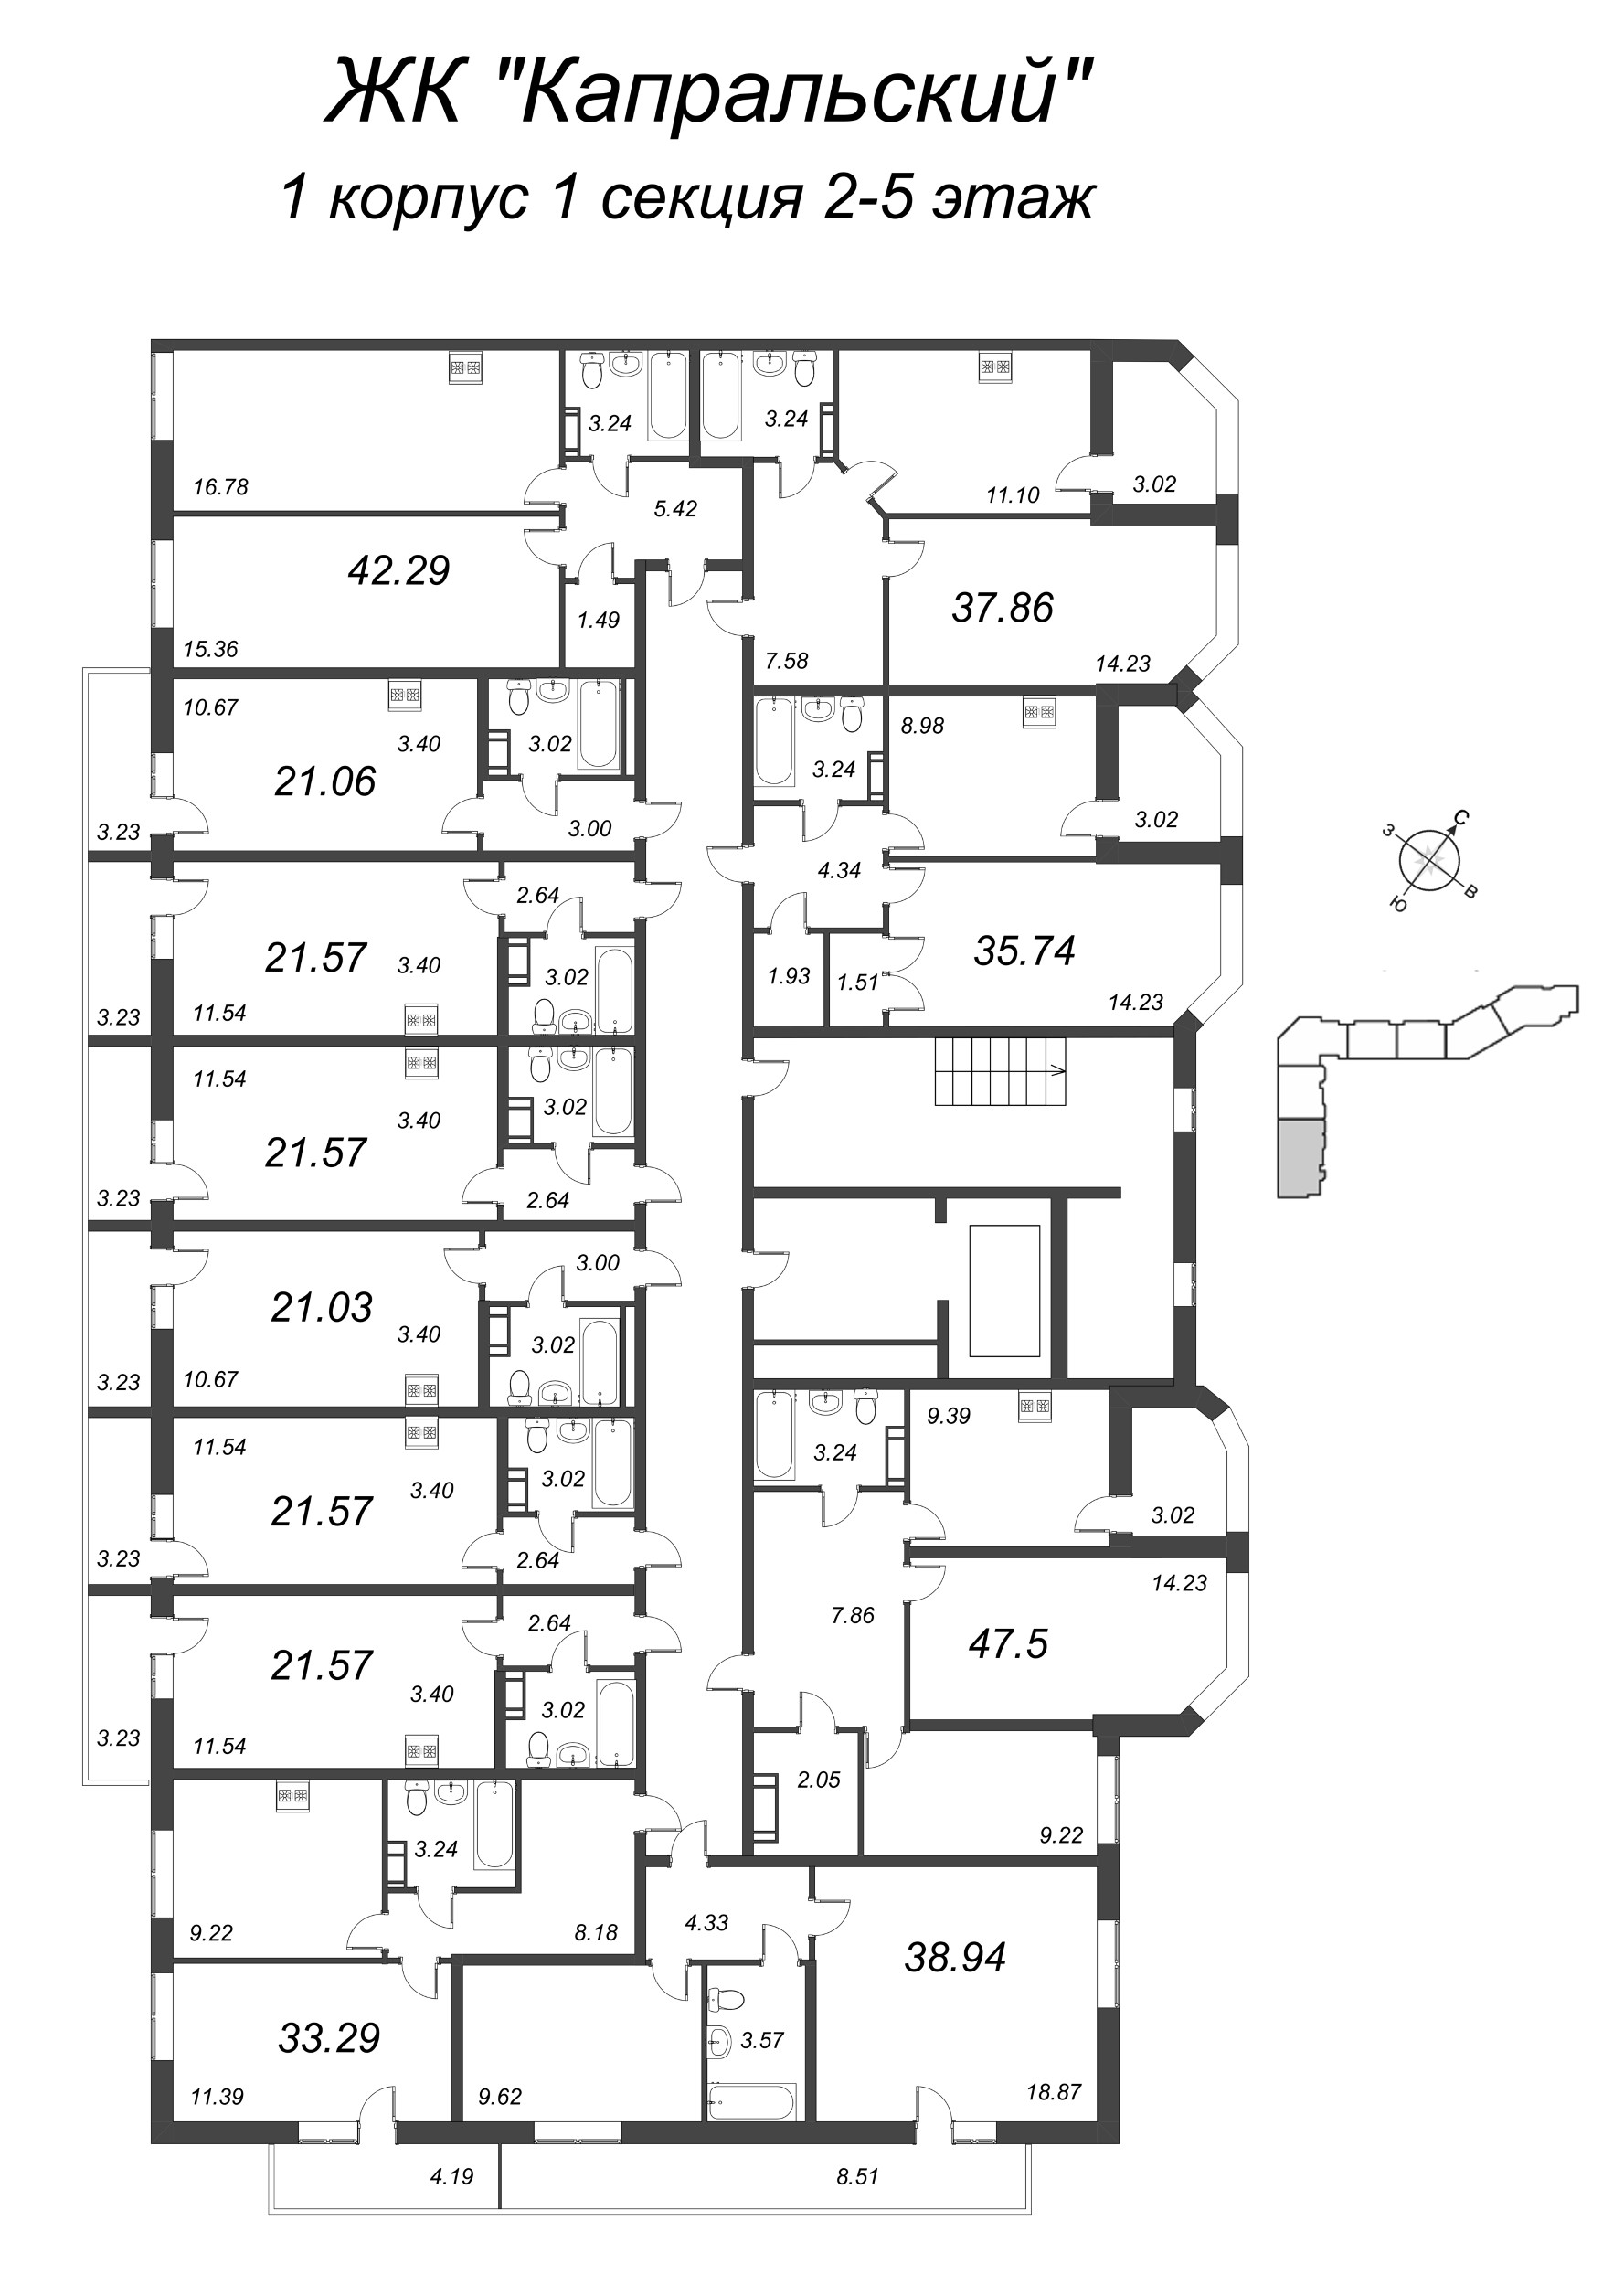 Квартира-студия, 21.57 м² в ЖК "Капральский" - планировка этажа